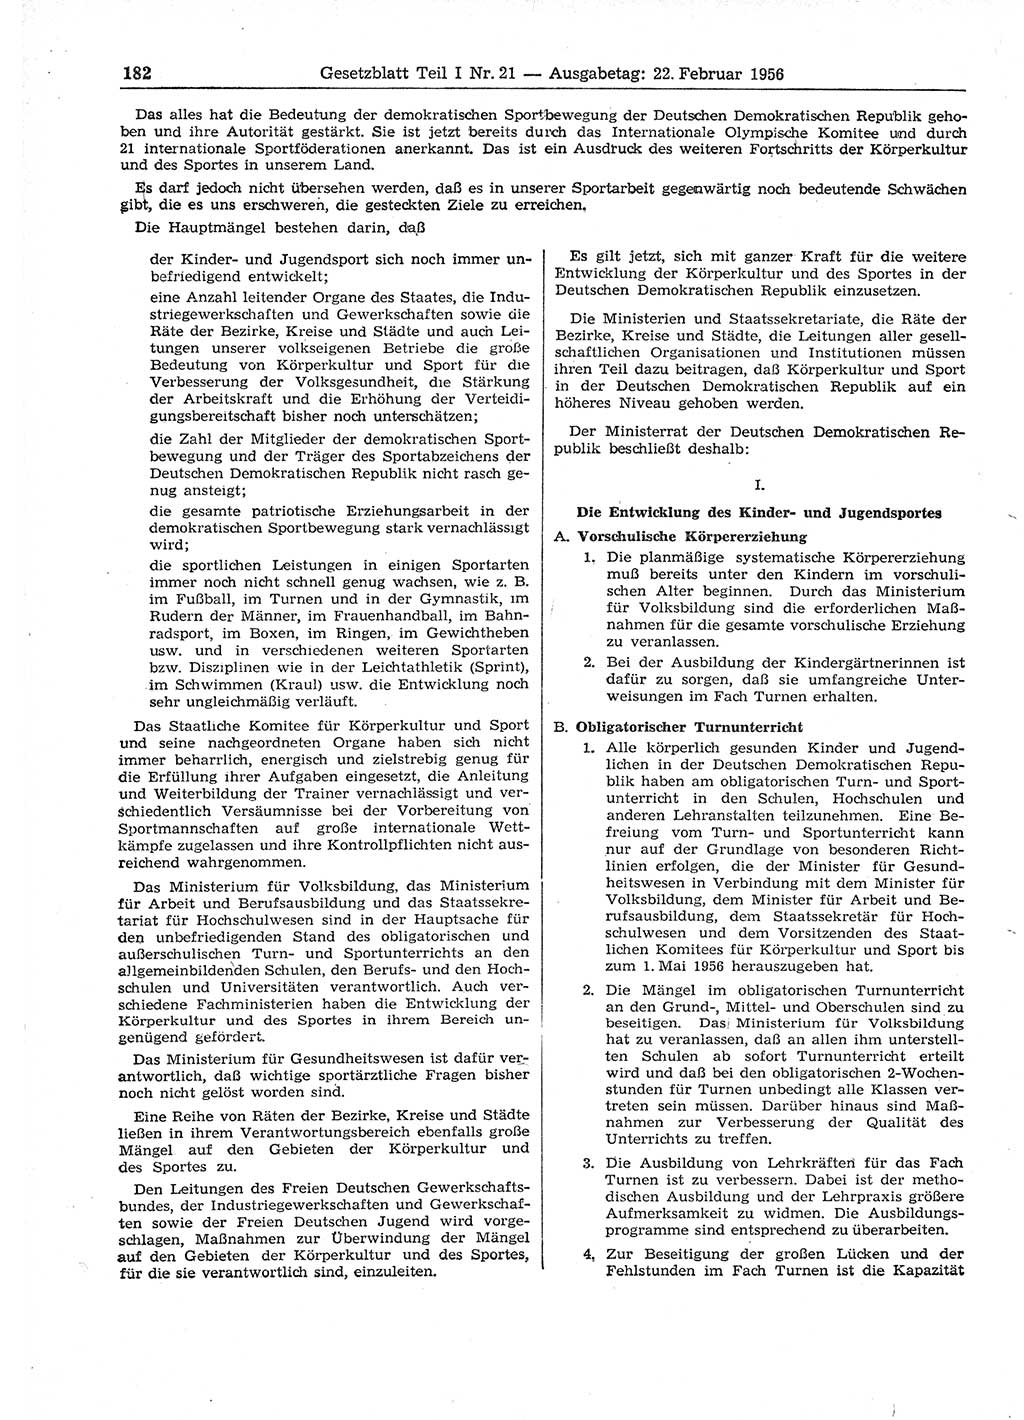 Gesetzblatt (GBl.) der Deutschen Demokratischen Republik (DDR) Teil Ⅰ 1956, Seite 182 (GBl. DDR Ⅰ 1956, S. 182)